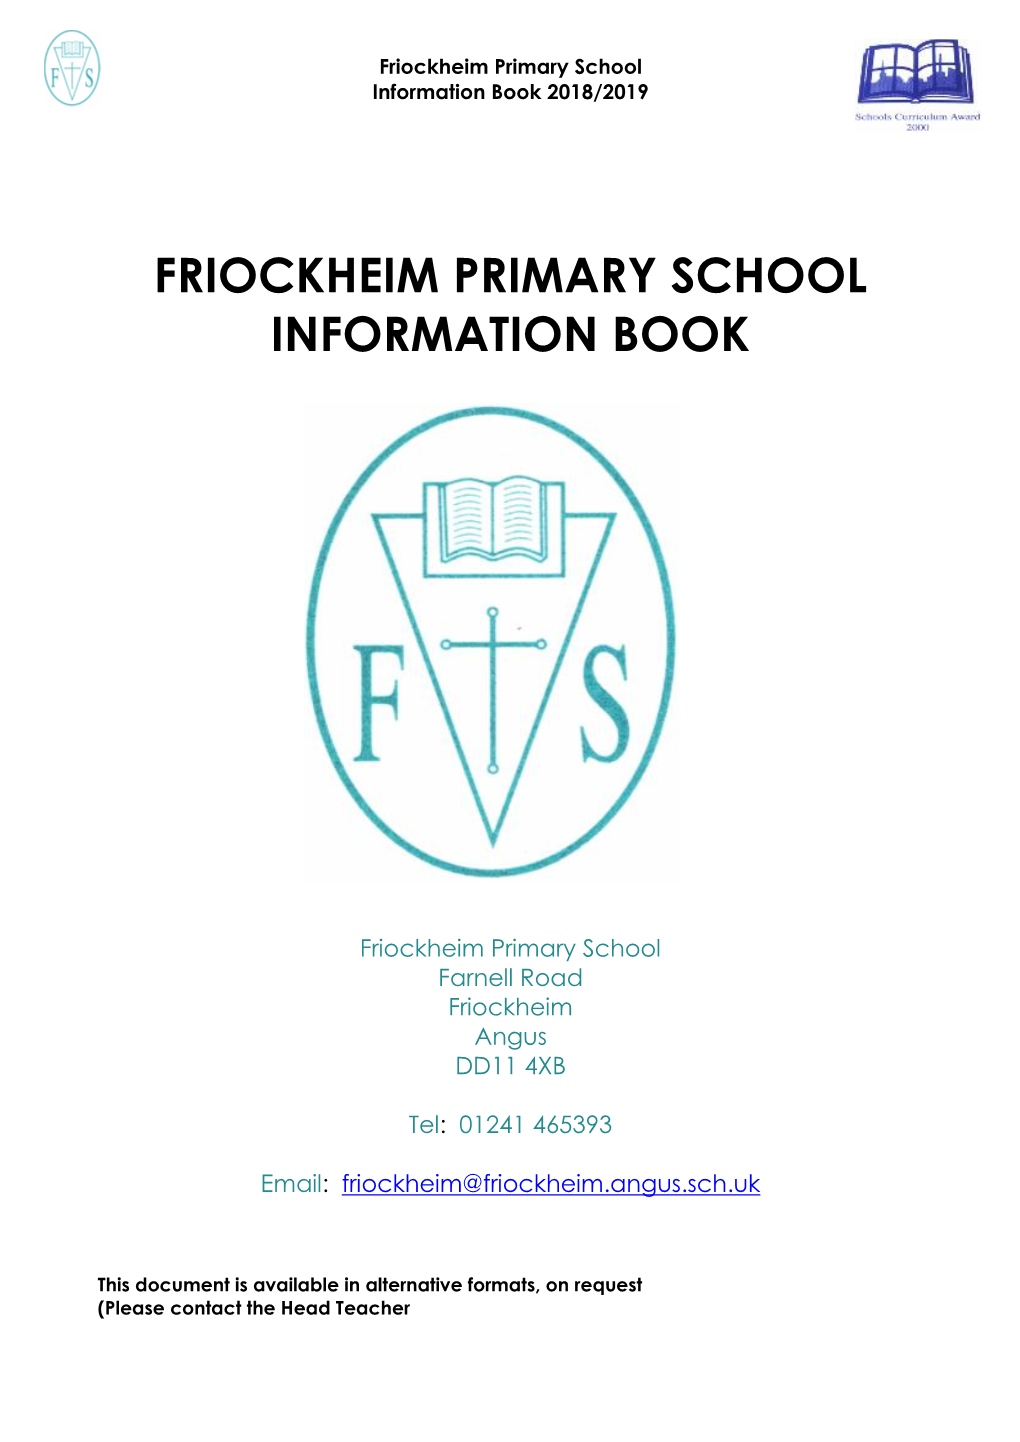 Friockheim Primary School Information Book 2018/2019